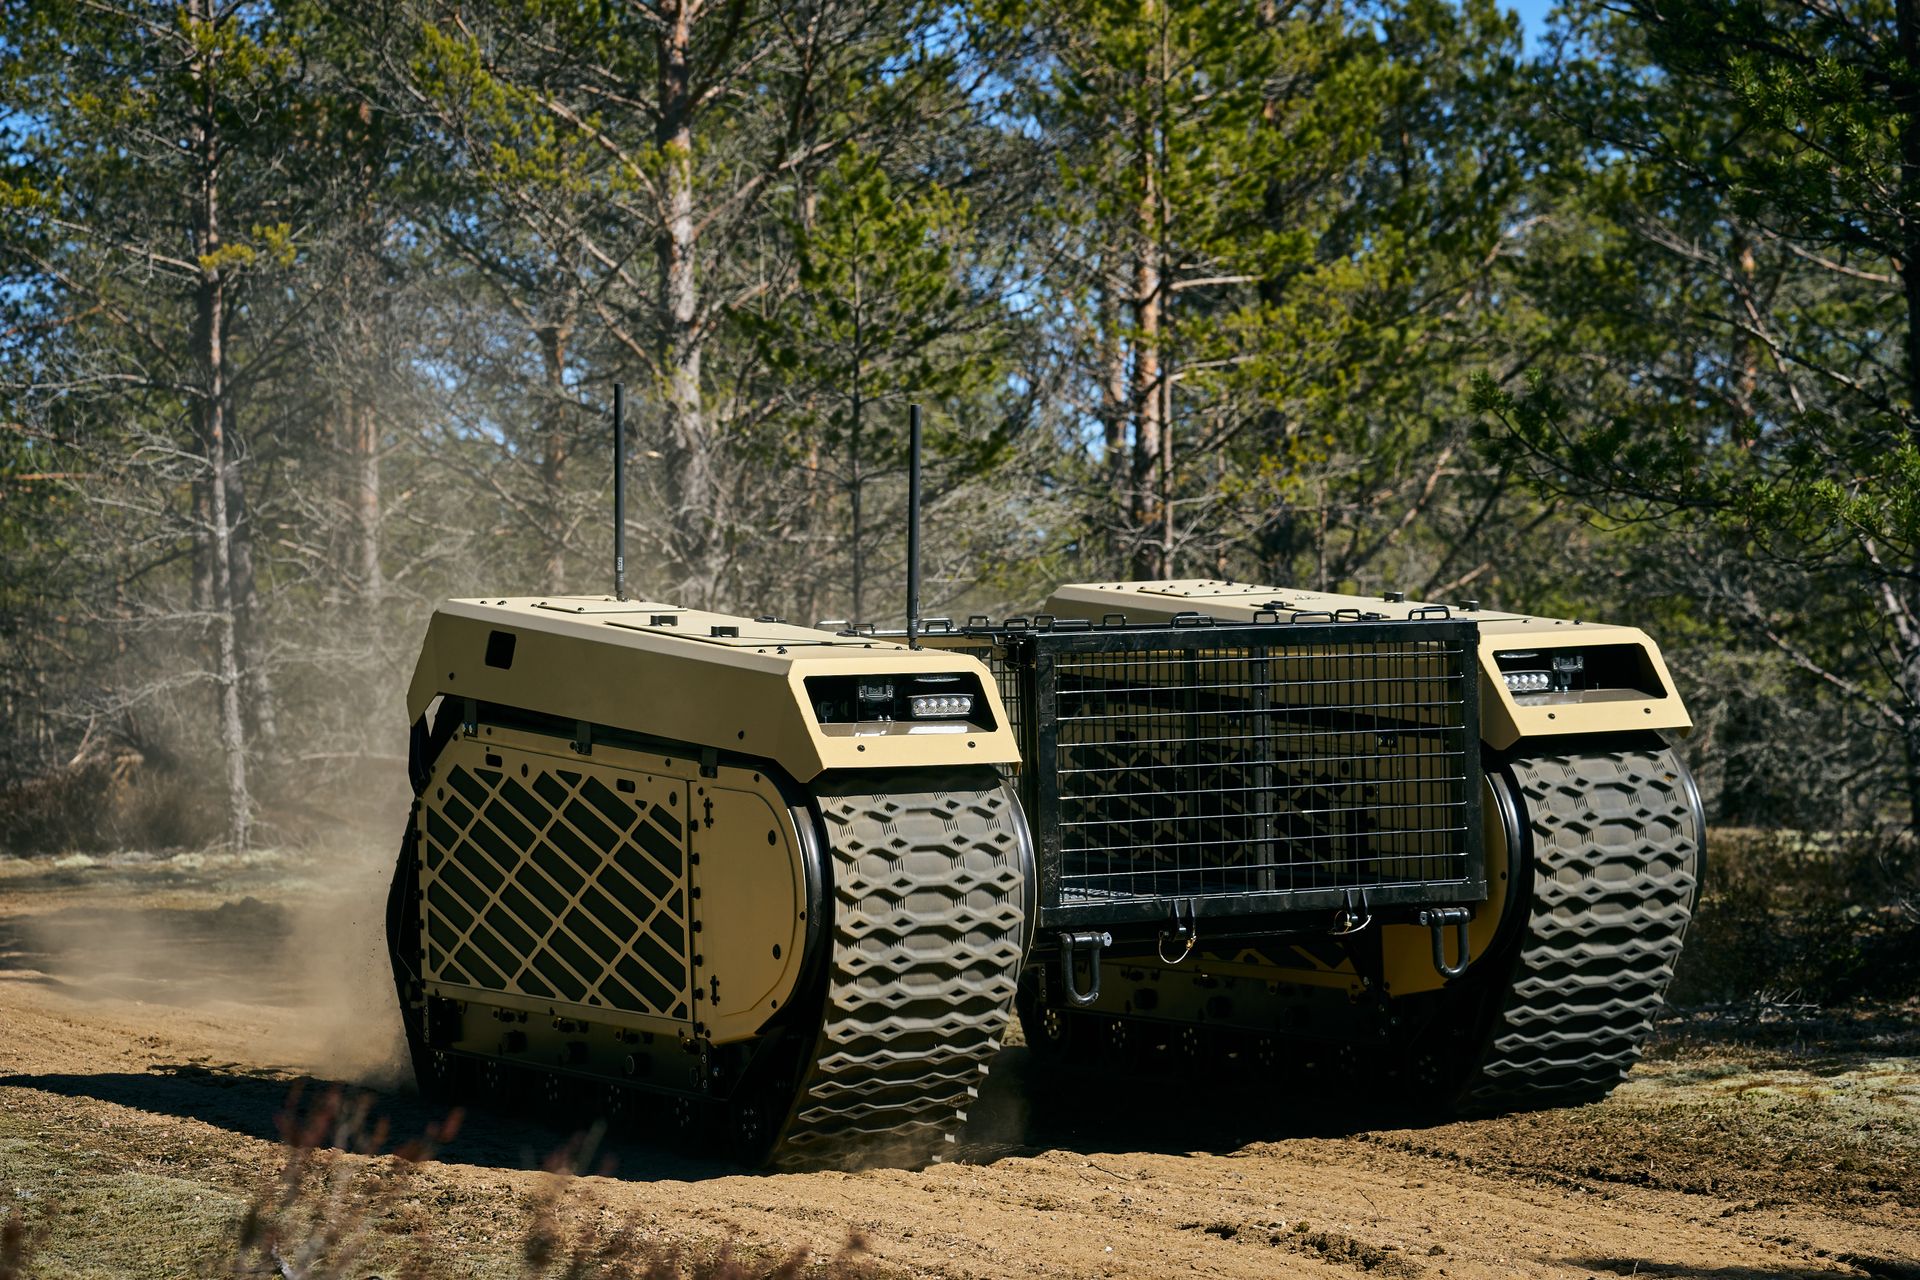 Generasi kelima tank Themis UGV milik Milrem Robotics digambarkan sebagai "kendaraan lacak serbaguna", yang dapat dilengkapi dengan berbagai teknologi perang seperti sistem senjata, drone yang ditambatkan, dan perangkat deteksi IED